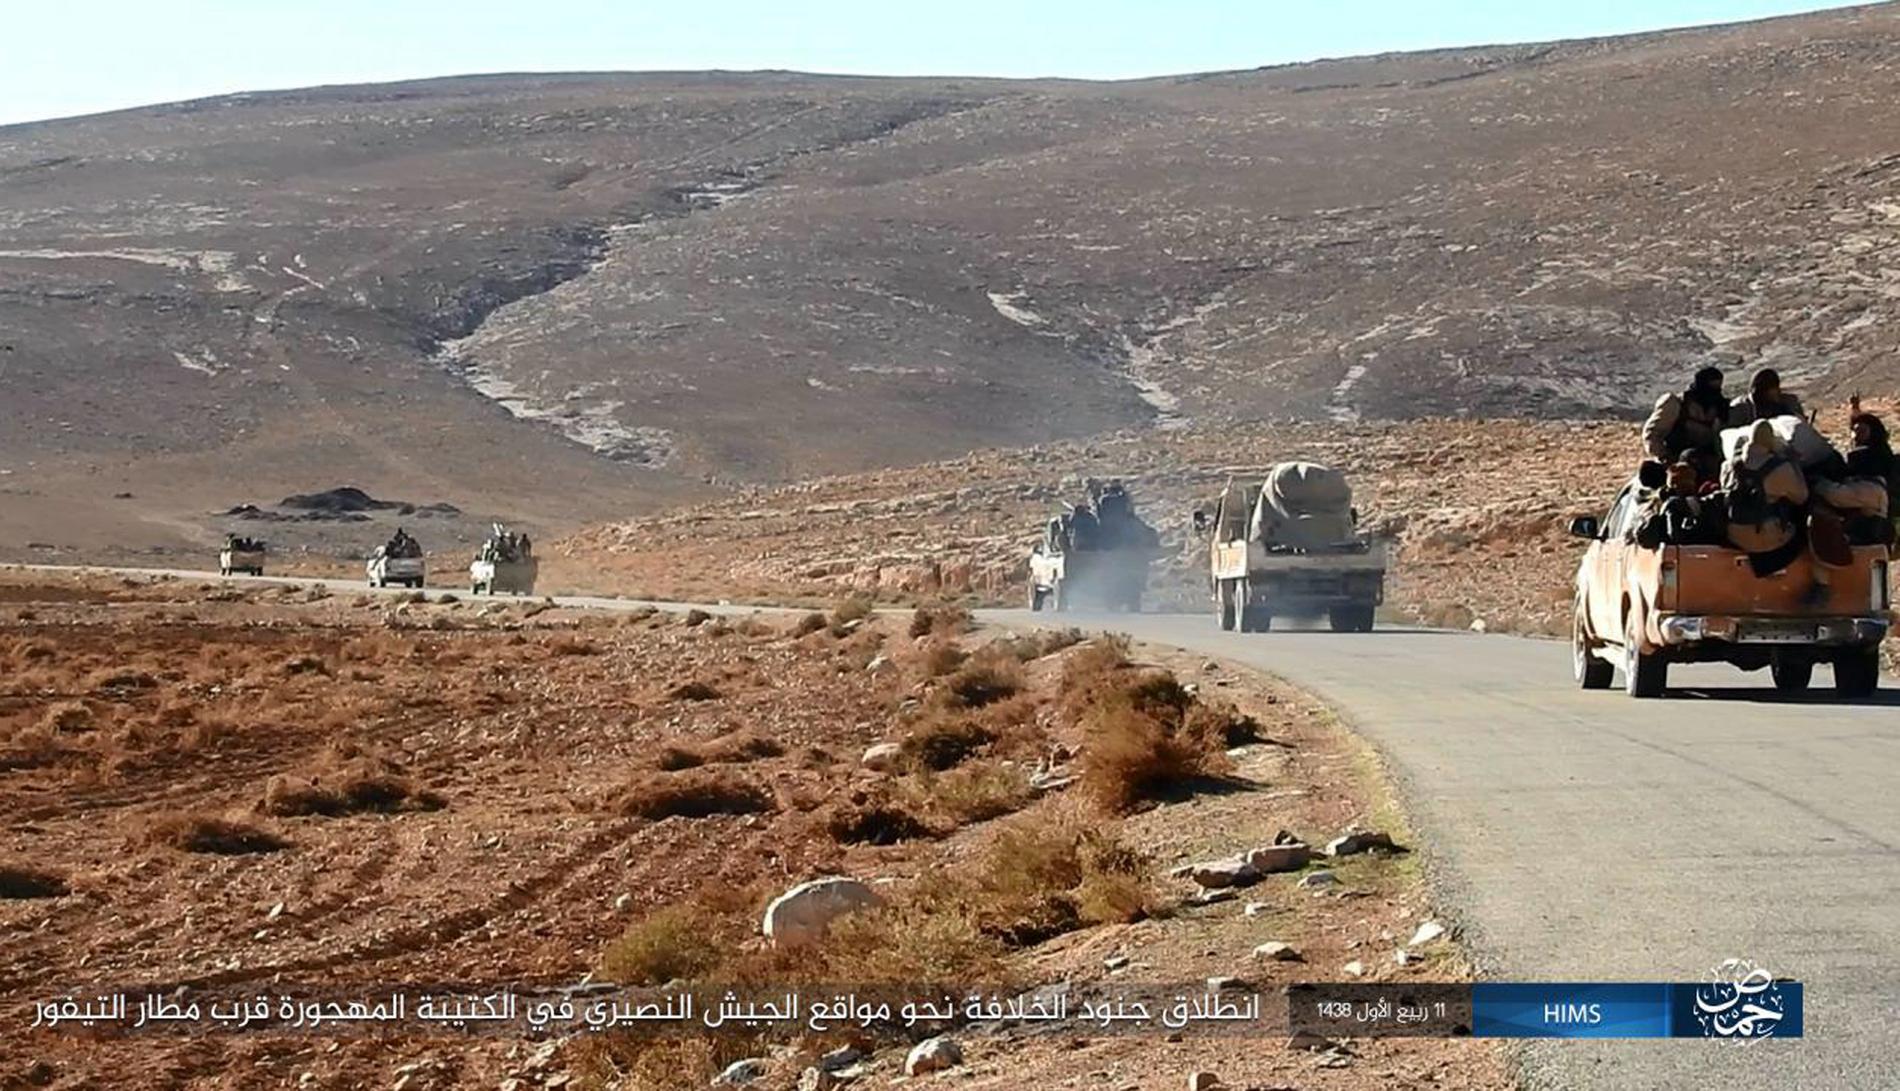 En IS-konvoj på väg genom öknen öster om Palmyra i december 2016. Terrorgruppens fästen finns numera främst i vidsträckta ökenområden i Irak och Syrien. Där tros även en del av de svenska IS-krigarna befinna sig.